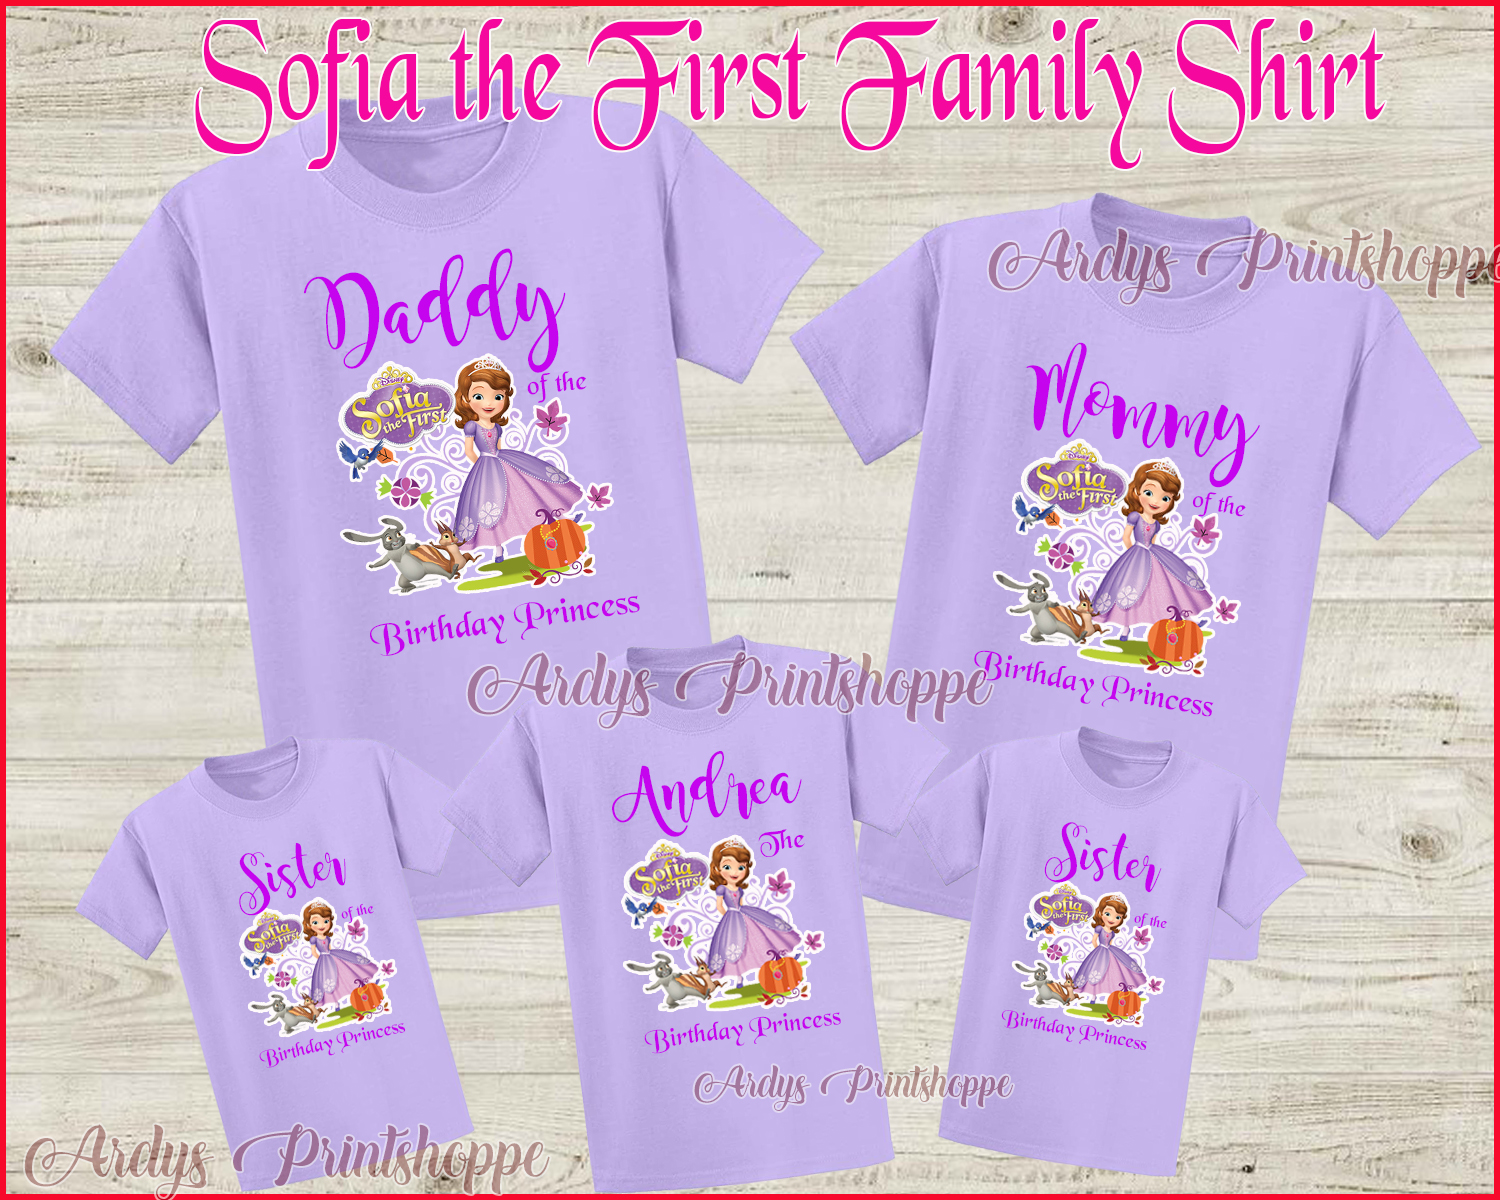 sofia the first shirts